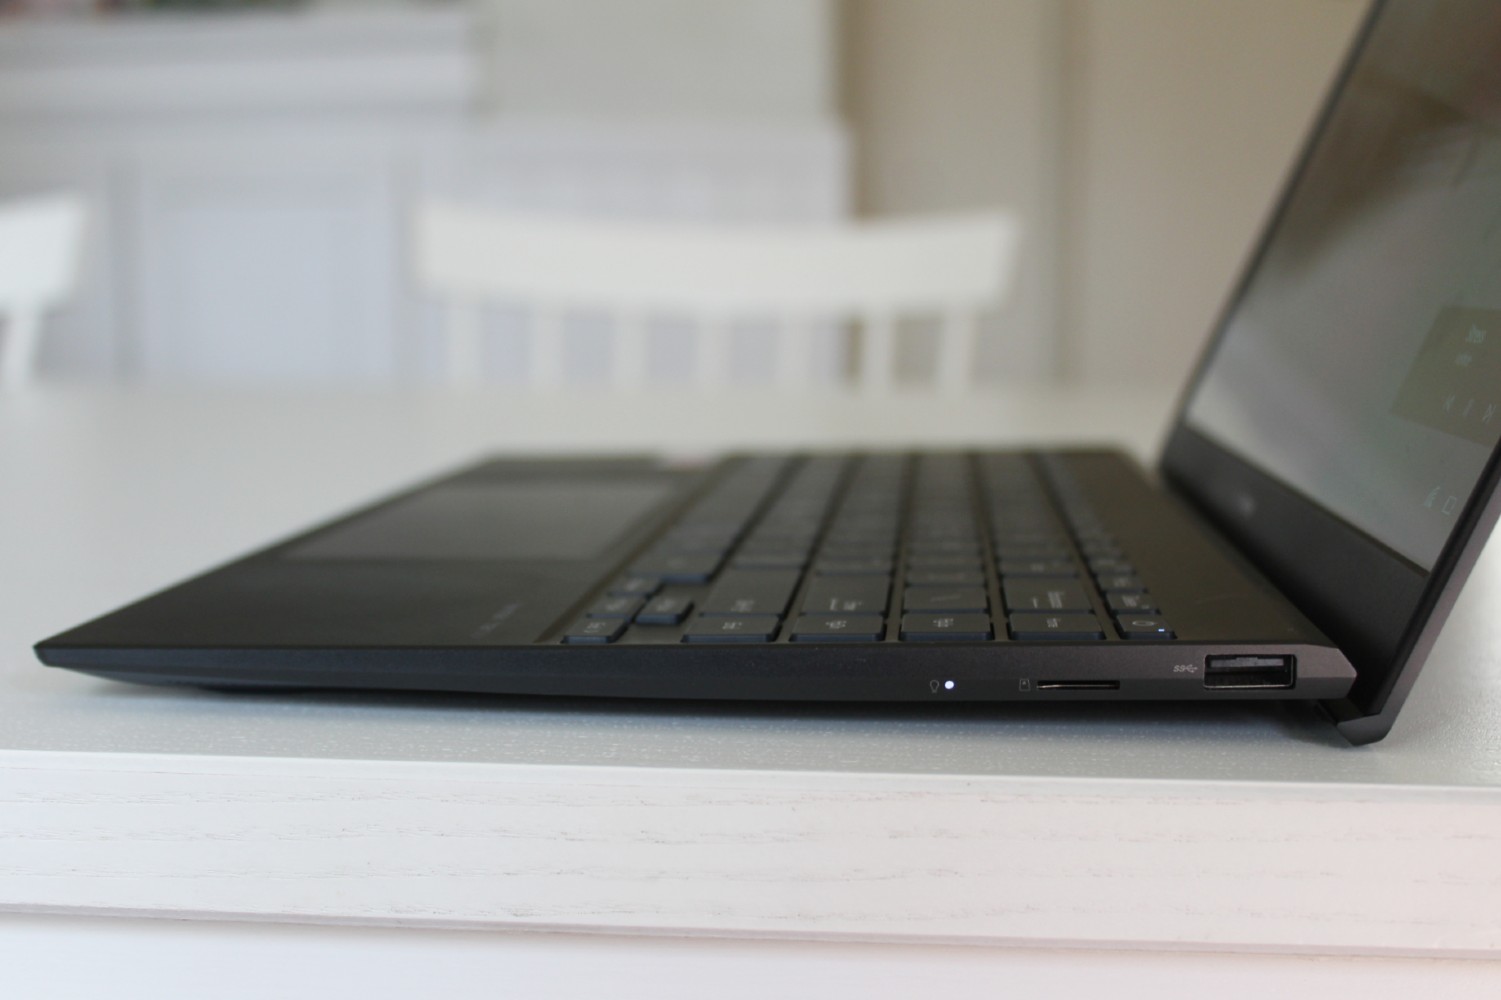 Review: Asus ZenBook 13 OLED UM325S - Laptop - HEXUS.net